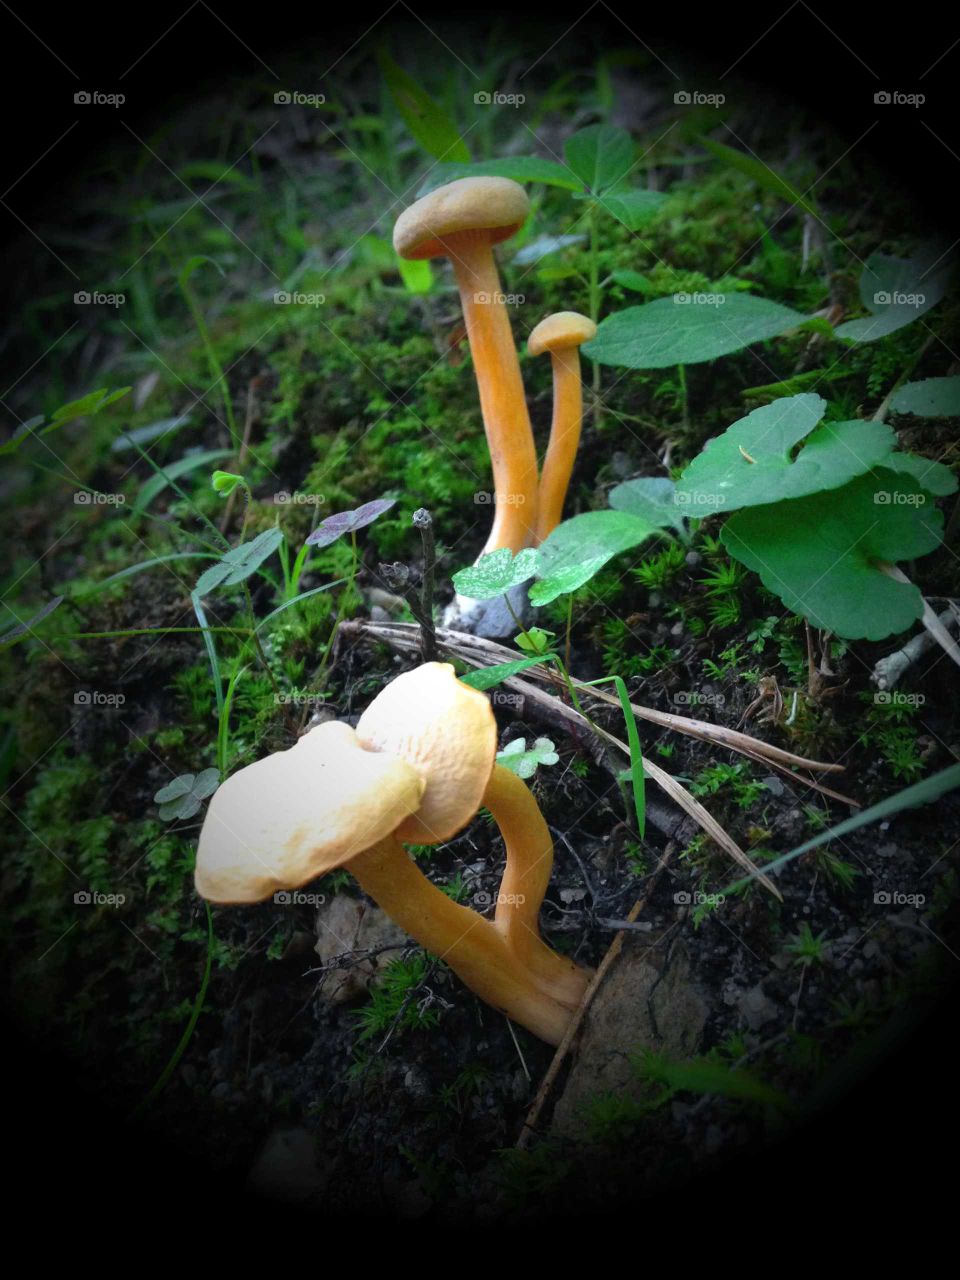 Yellow Mushrooms